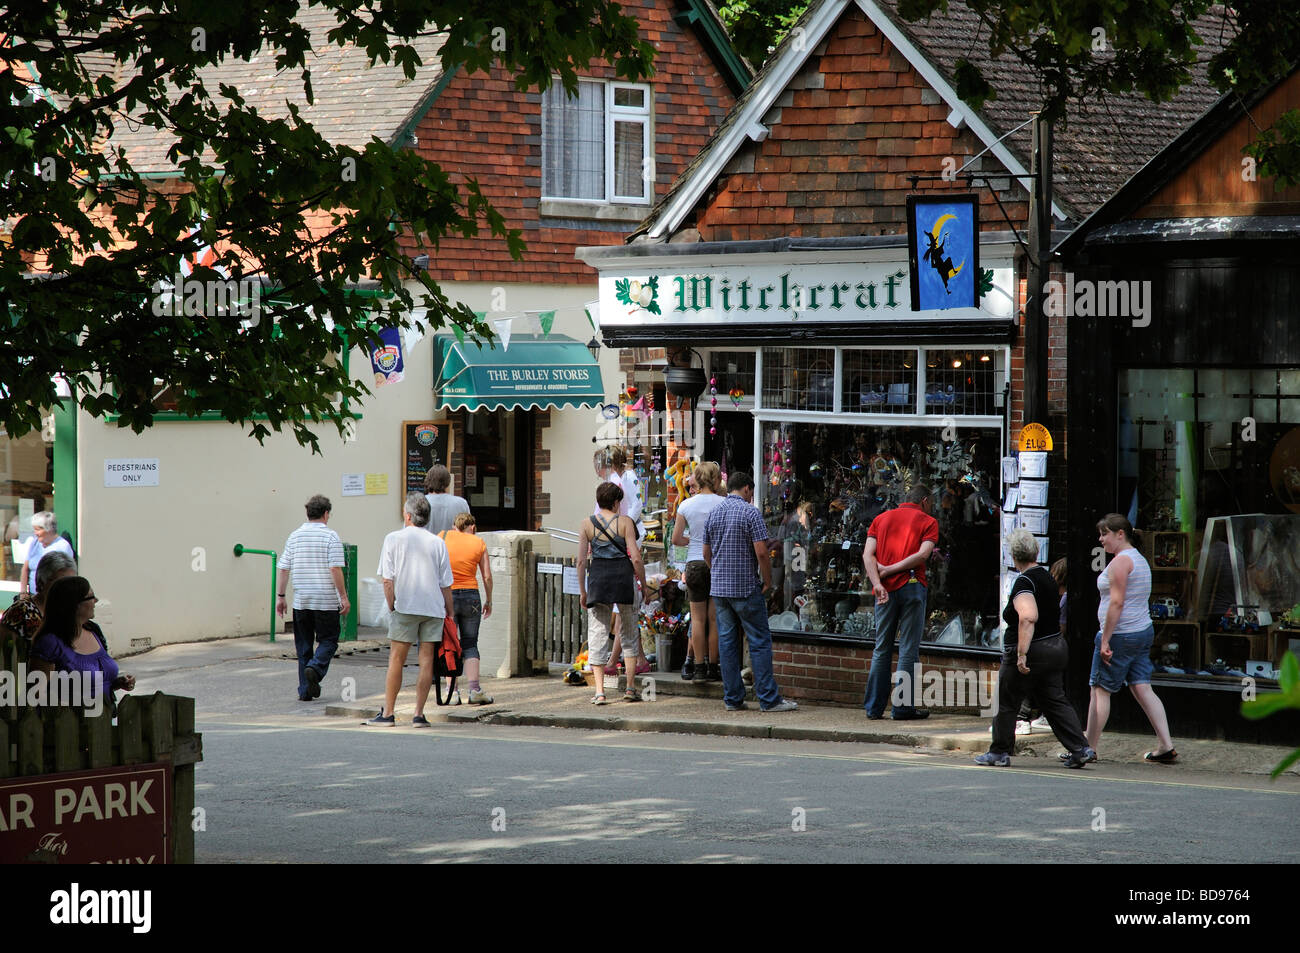 Burley villaggio turistico centro mangiare e fare shopping centre Hampshire Inghilterra UK stregoneria shop Foto Stock